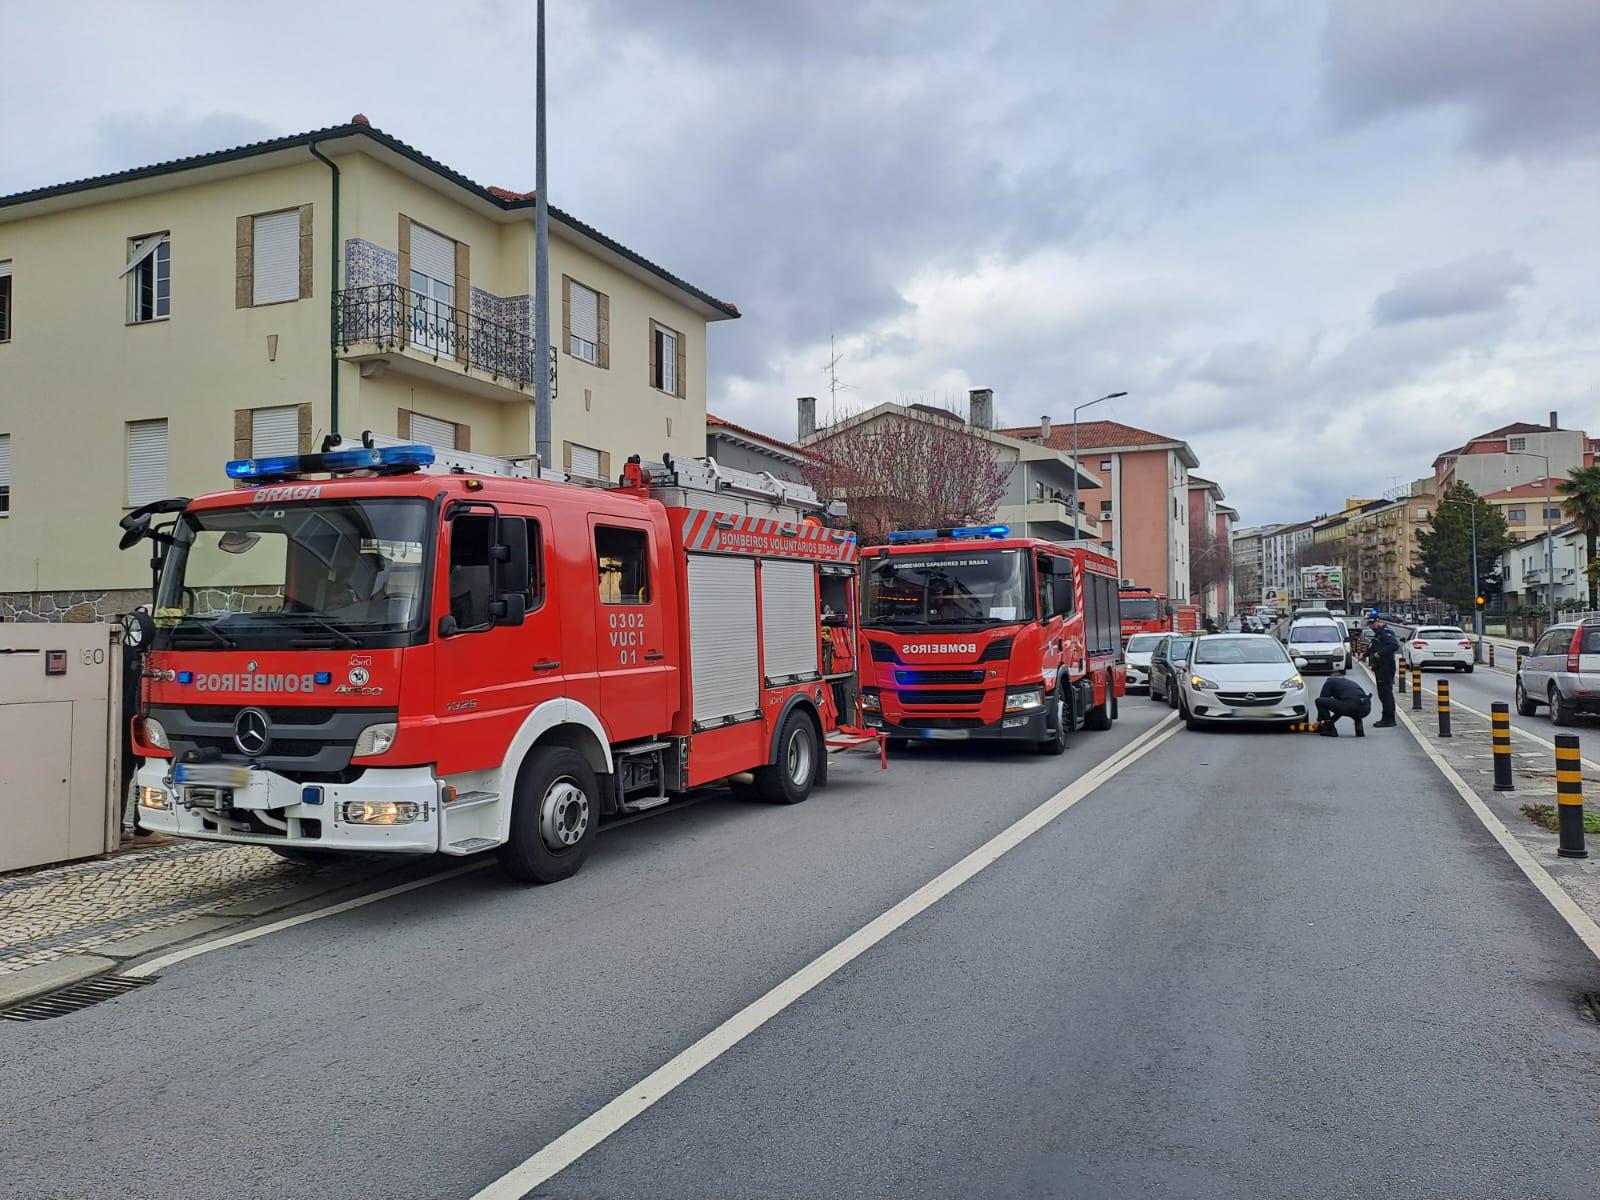 Aquecedor pega fogo e provoca susto em habitação no centro de Braga